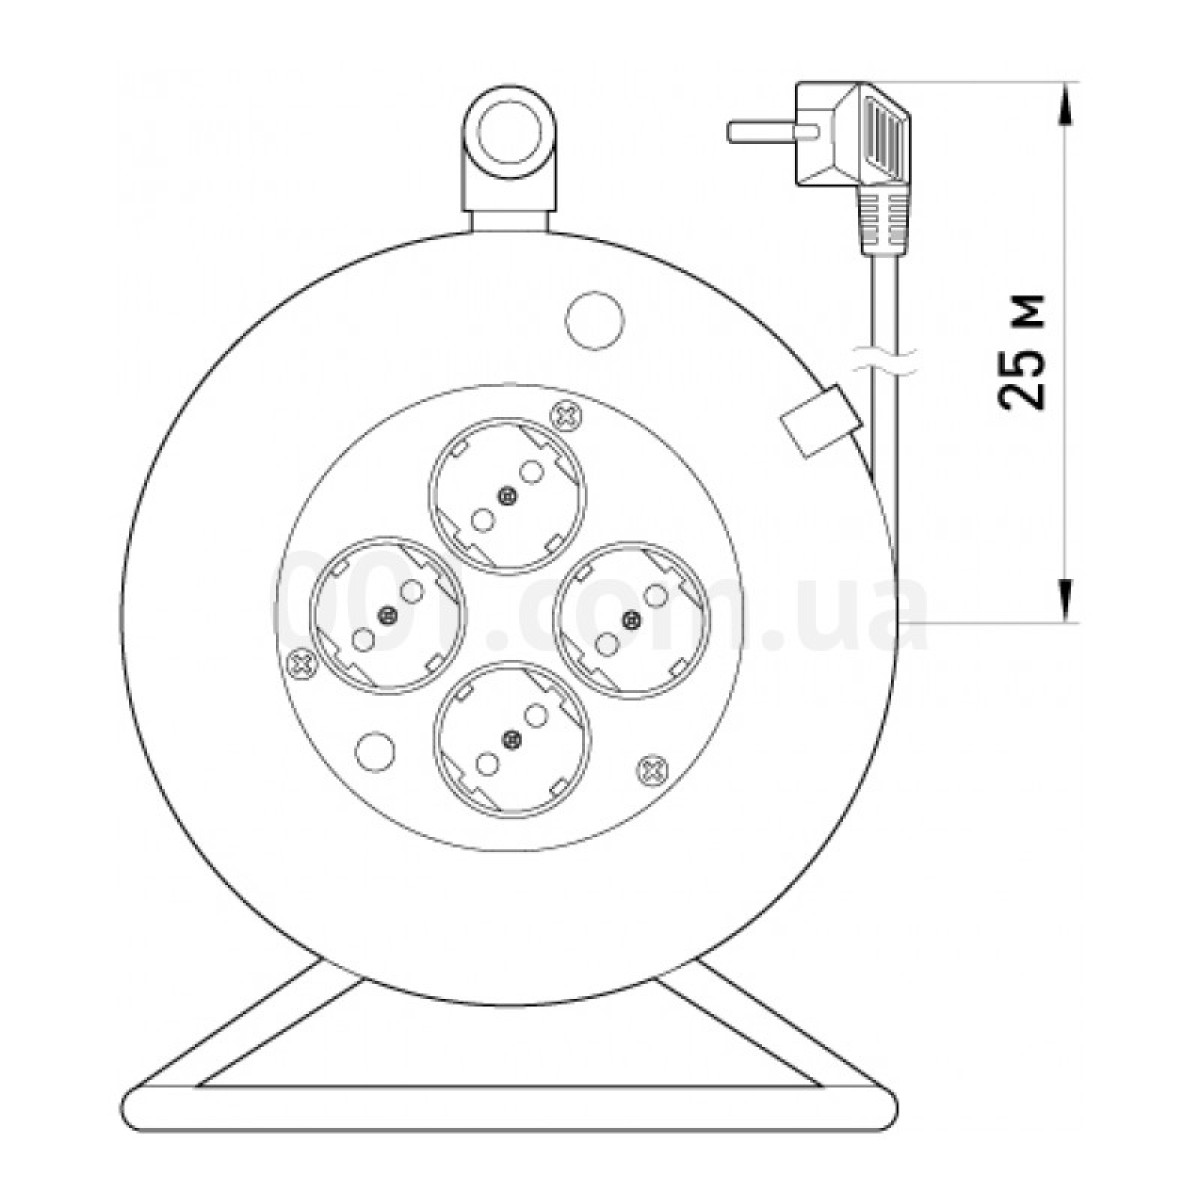 Удлинитель барабанного типа на 4 гнезда 25 м (3×1,5 мм²) с заземлением, защитой от перегрузки и защитными шторками e.es.roll.4.25.z.b, E.NEXT 98_98.jpg - фото 2